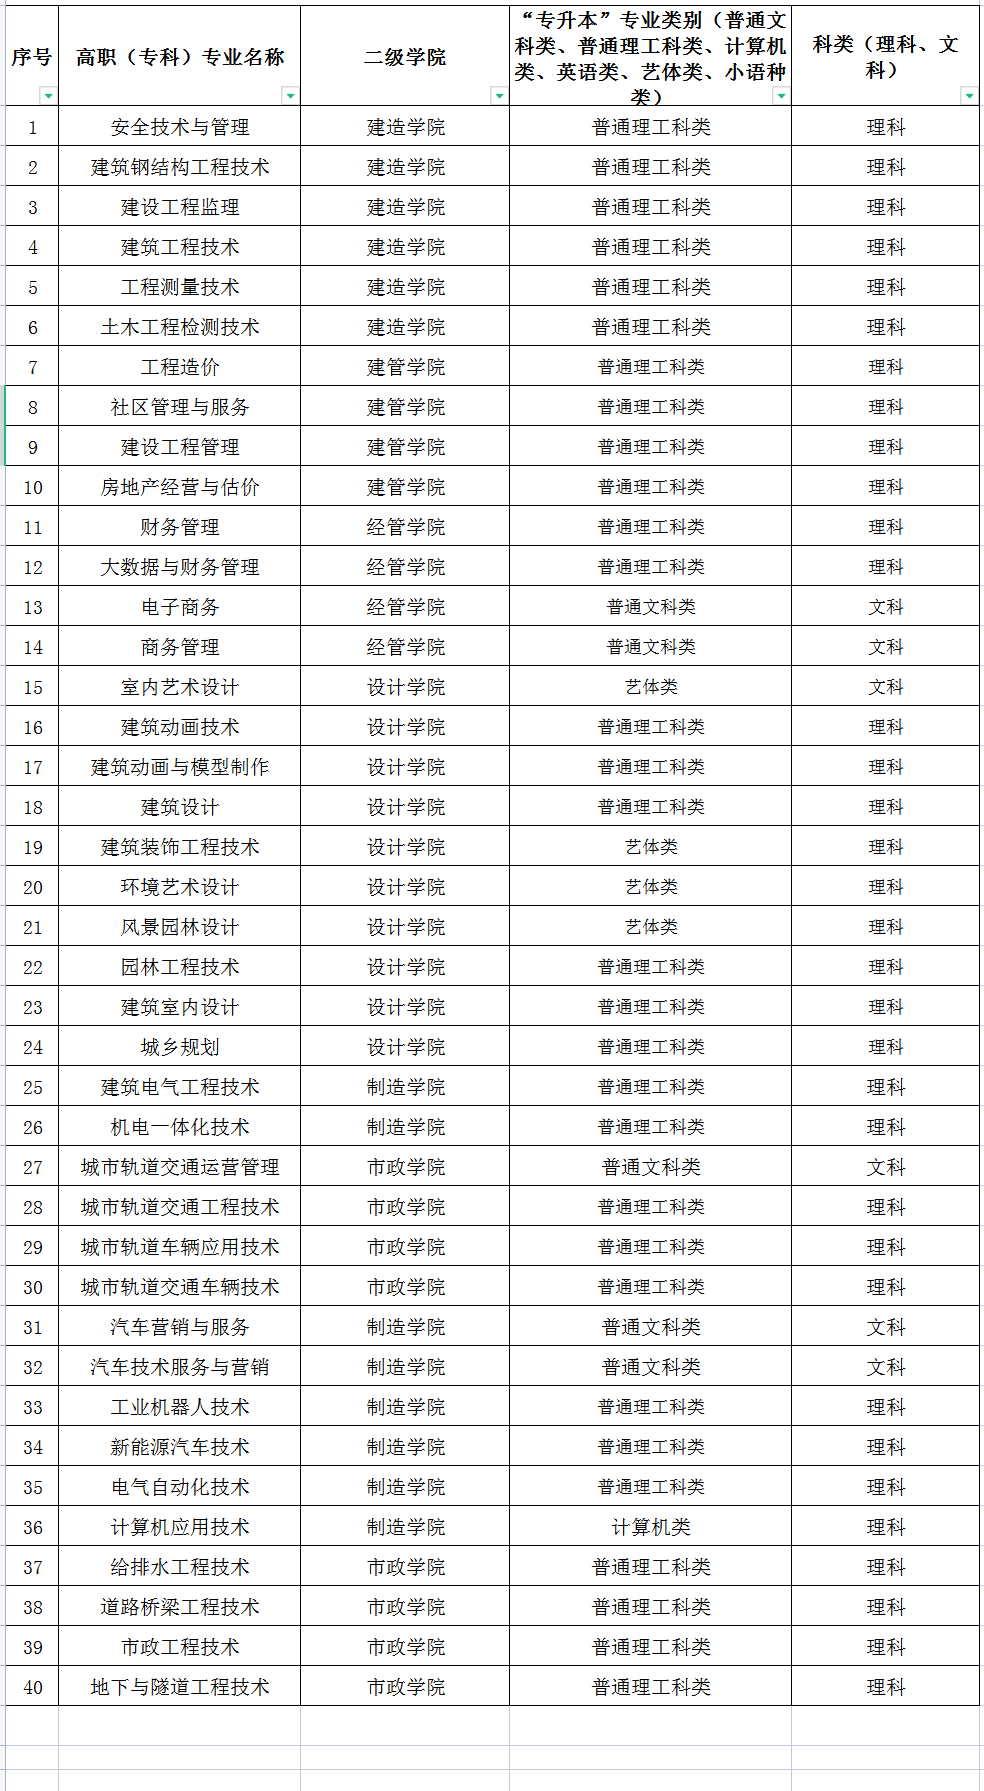 重庆建筑工程职业学院2023年专升本专业类别与科类表